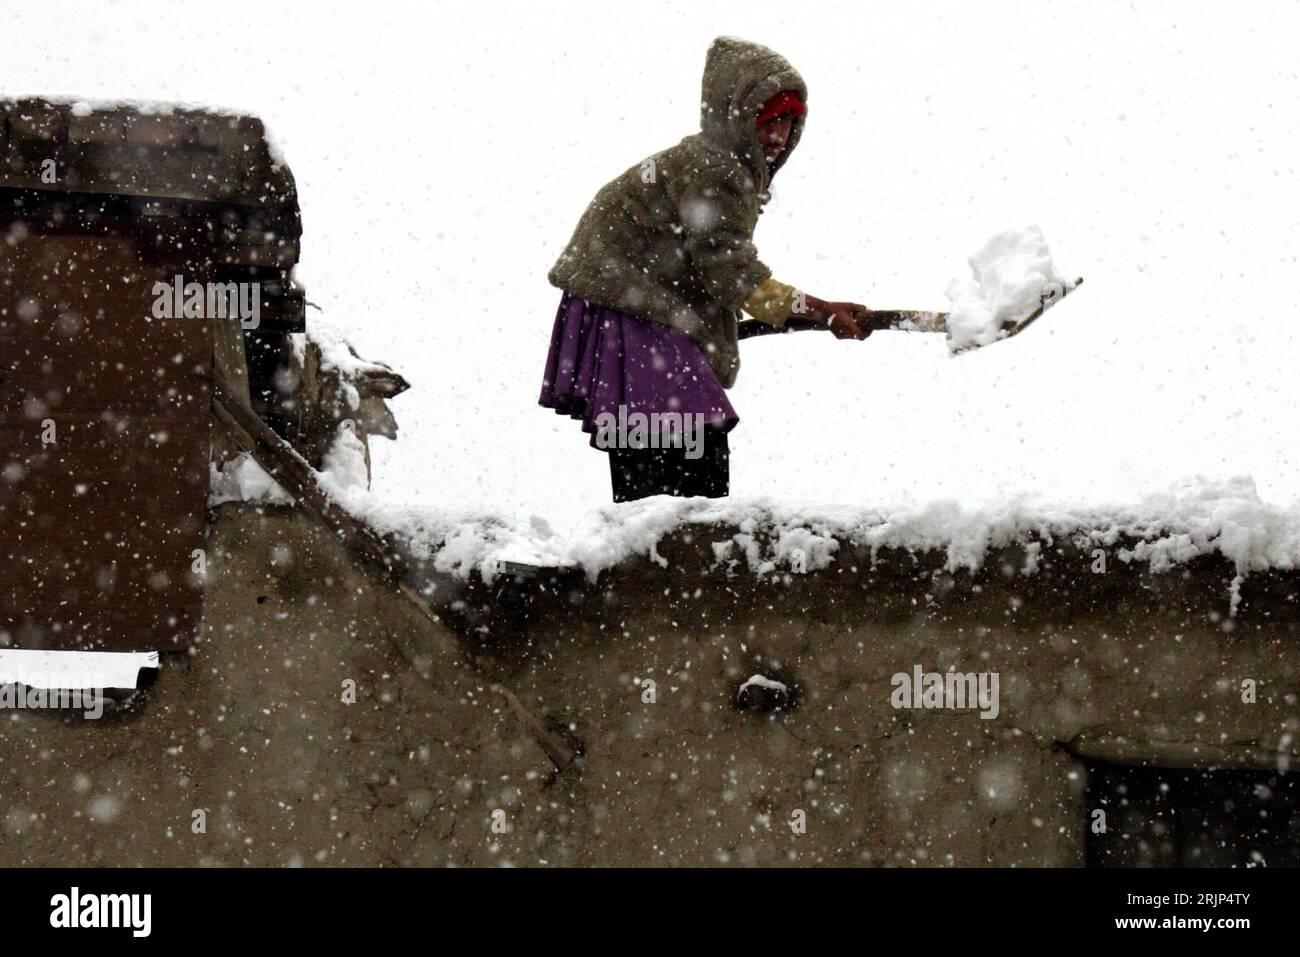 Bildnummer: 51087395 Datum: 15.01.2006 Copyright: imago/Xinhua Schnee a Kabul! Mädchen beim Schneeschippen - PUBLICATIONxNOTxINxCHN, Pflanzen; 2006, Kabul, Kaschmir, schneit, schneien, schneiend, Schnee, Schneefall, Schneefälle, Schneegestöber, Einheimische, Einheimischer, kind, Kinder, schippen, schippend, schaufeln, schaufelt, schaufelnd, Schippt, Schippe; , quer, Kbdig, Winter, Jahreszeit, Einzelbild, Afghanistan, , Foto Stock